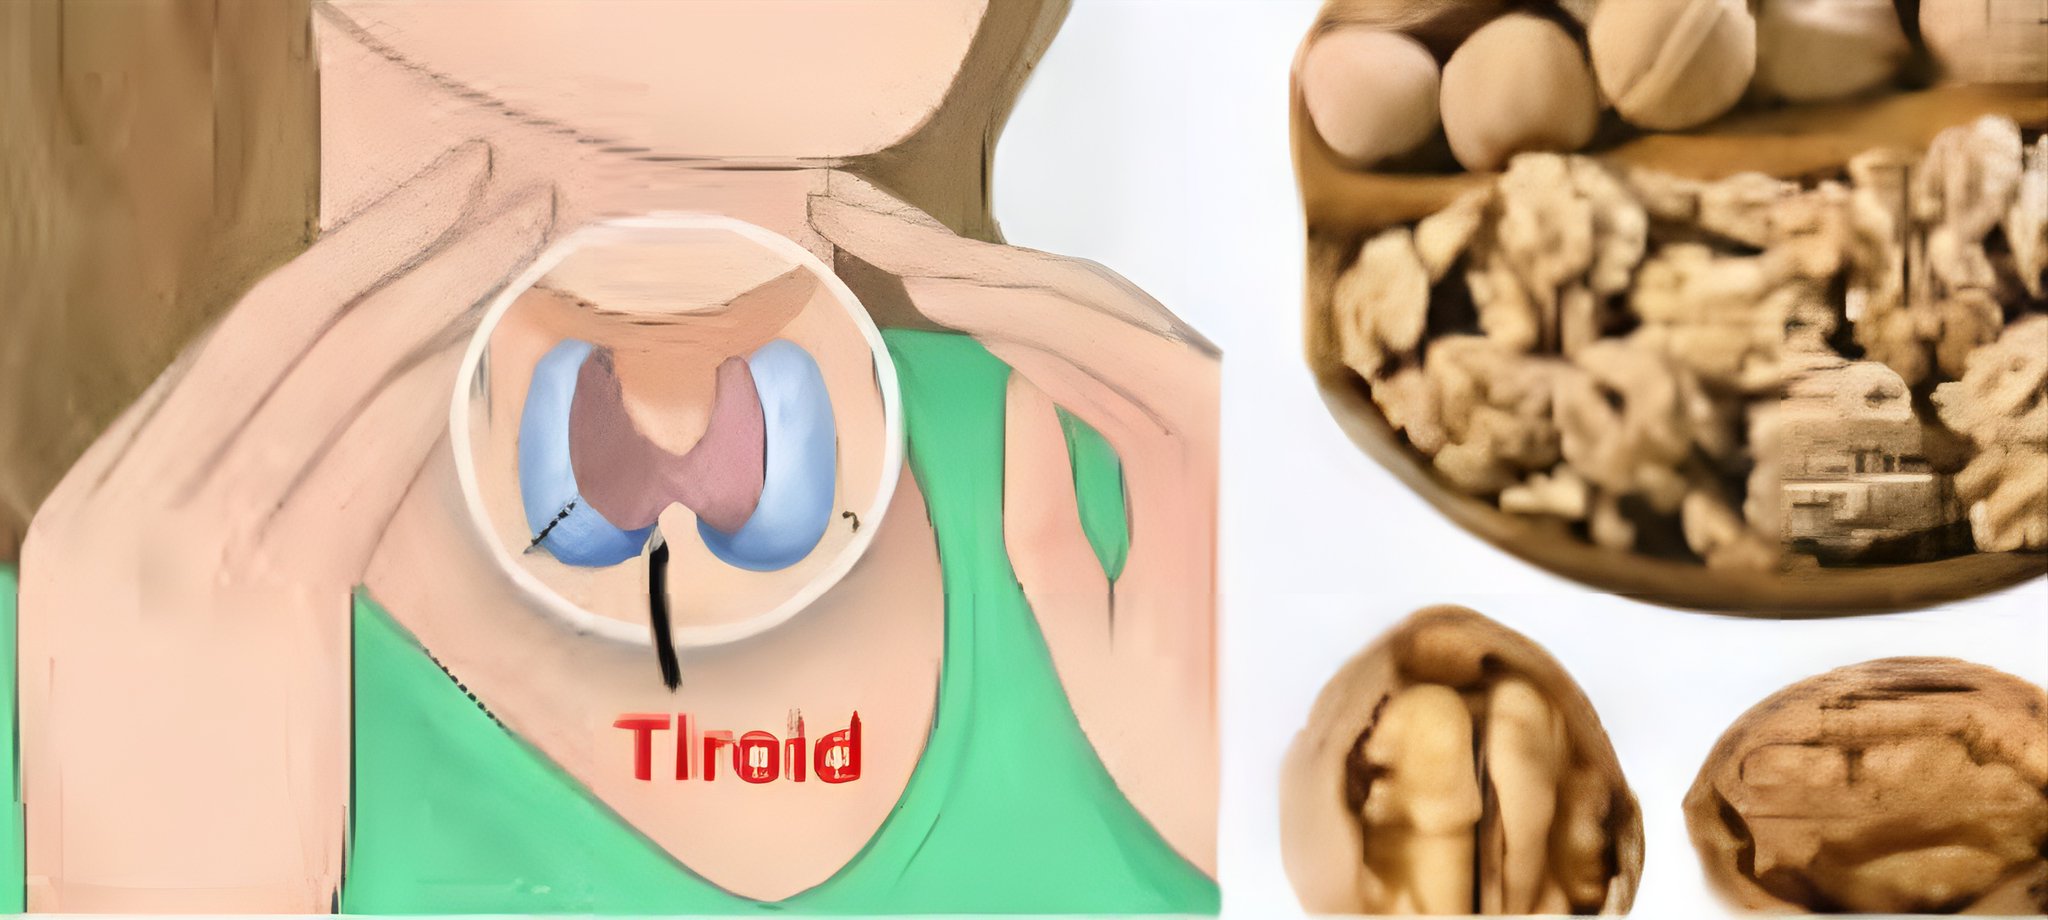 Doğal Çözüm: Ceviz İç Perdesi Tiroid İlacı Olabilir